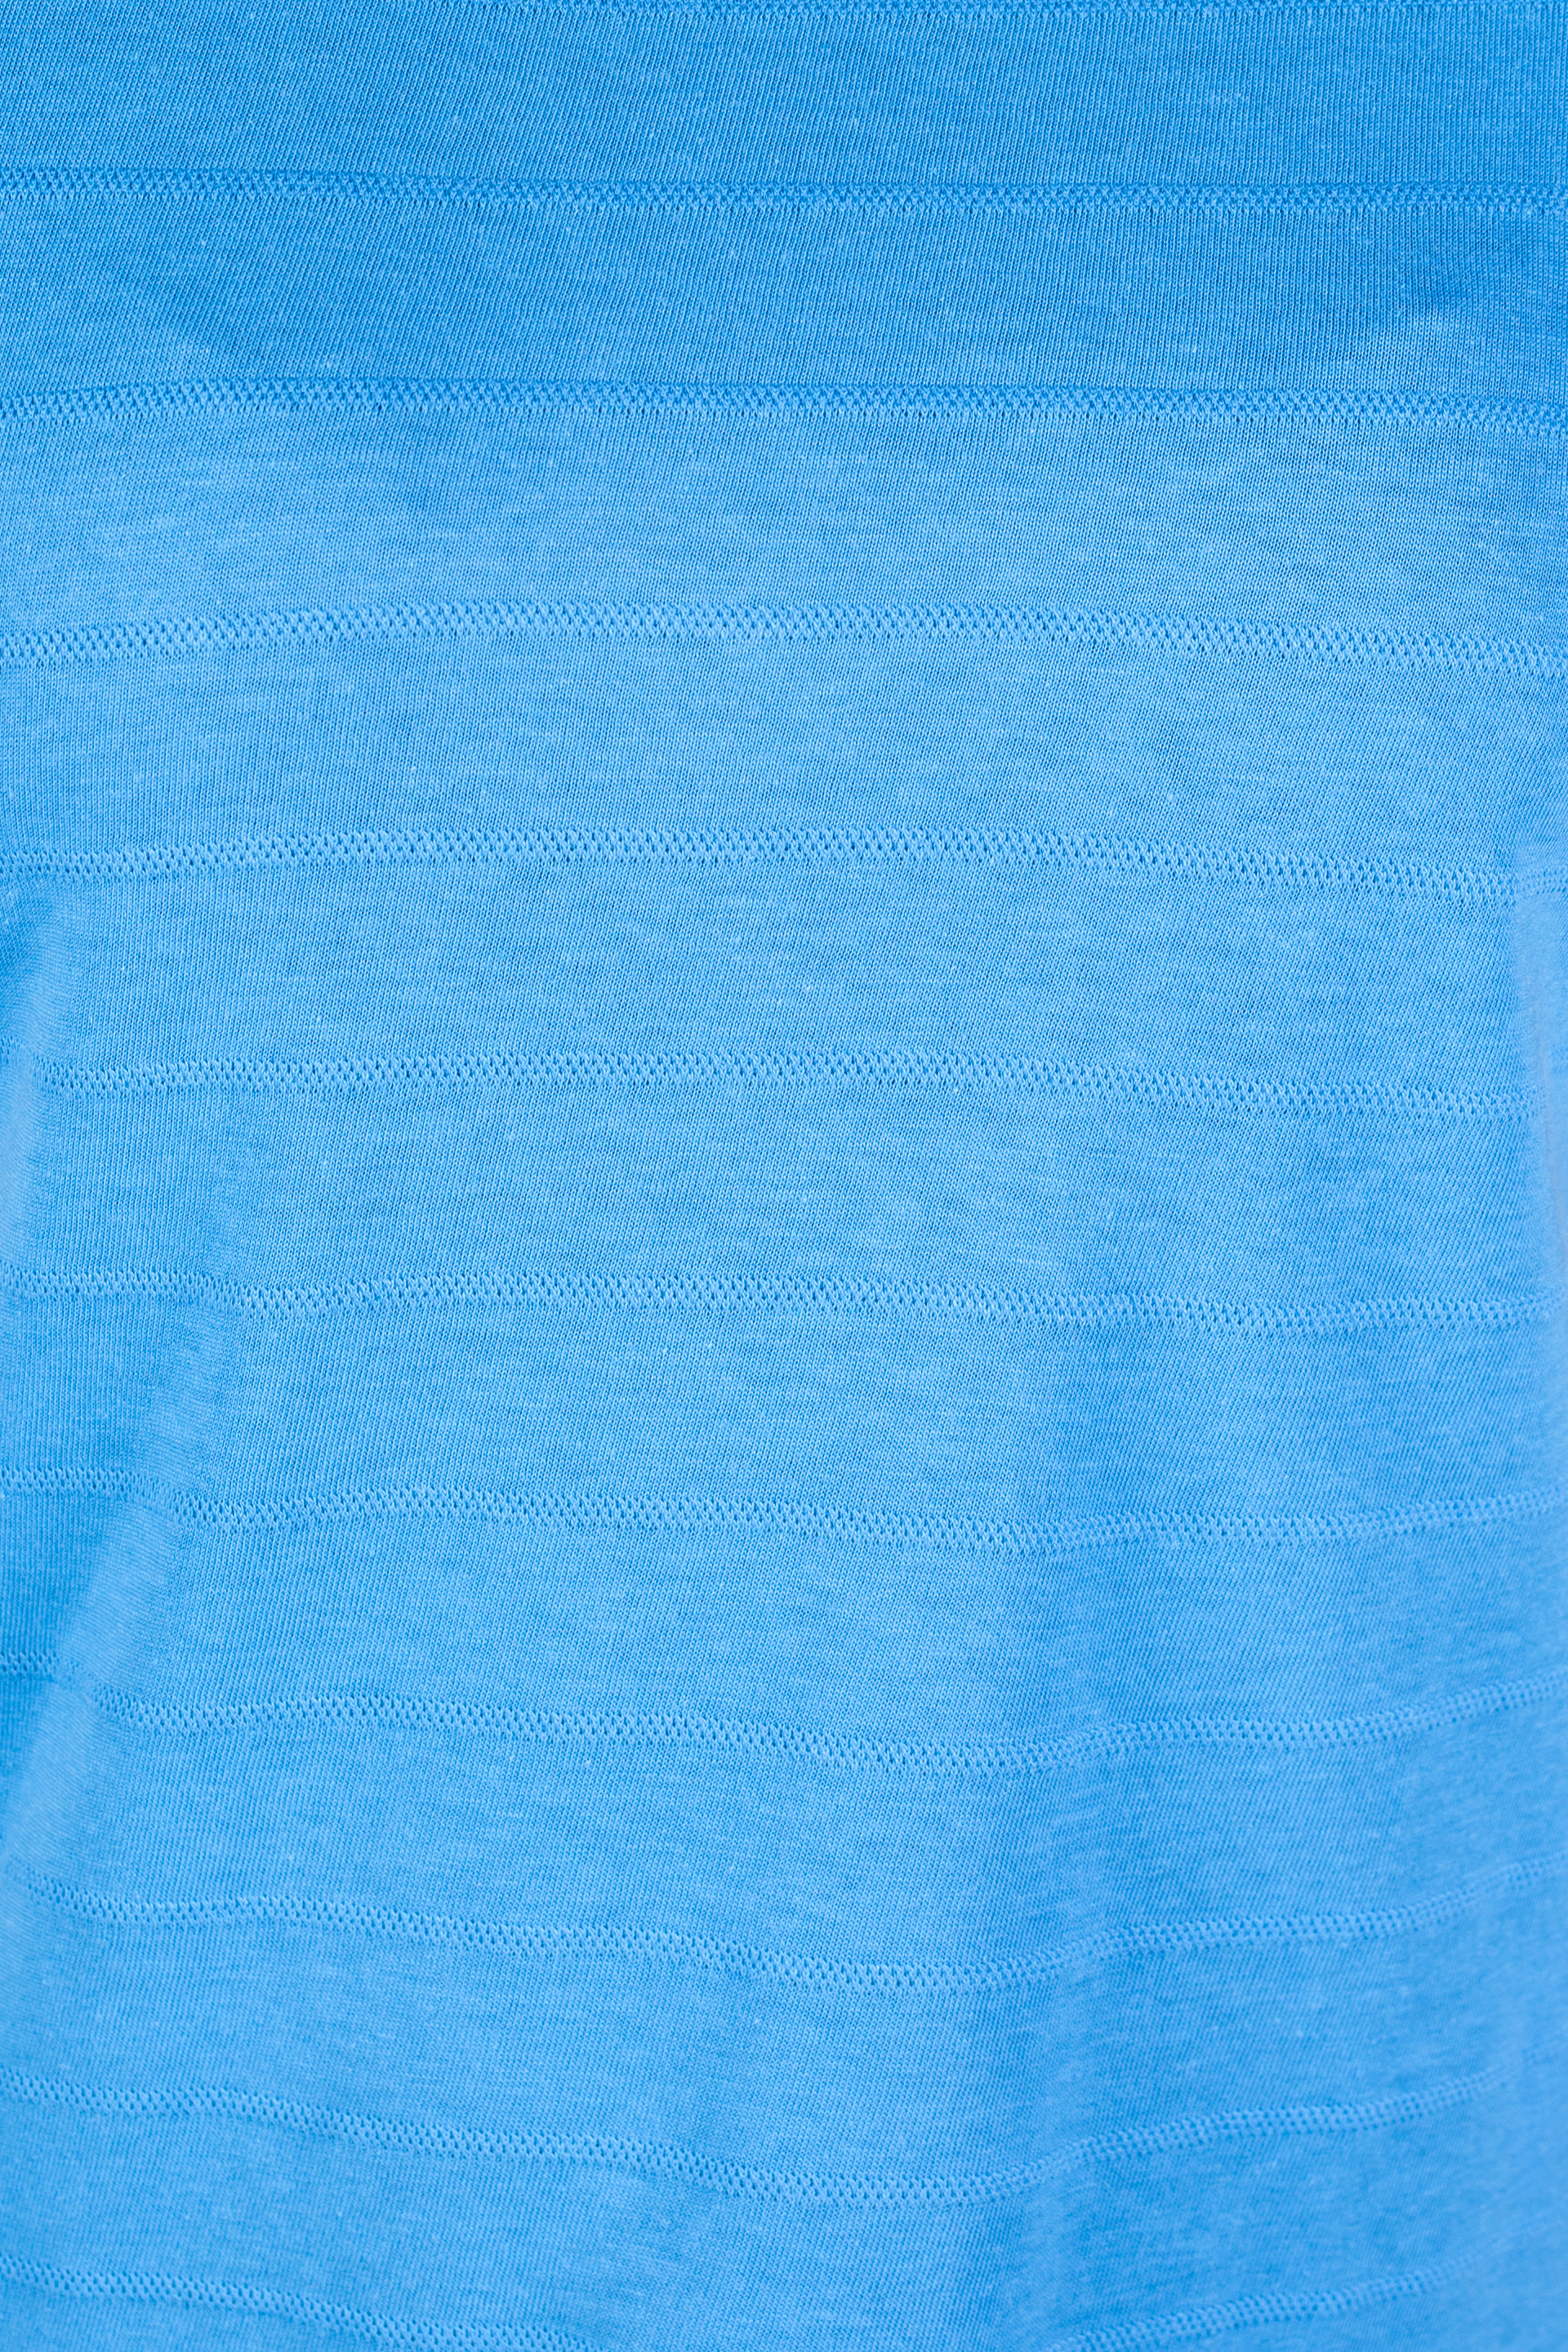 T-shirt BLUE SEVEN 105786-515